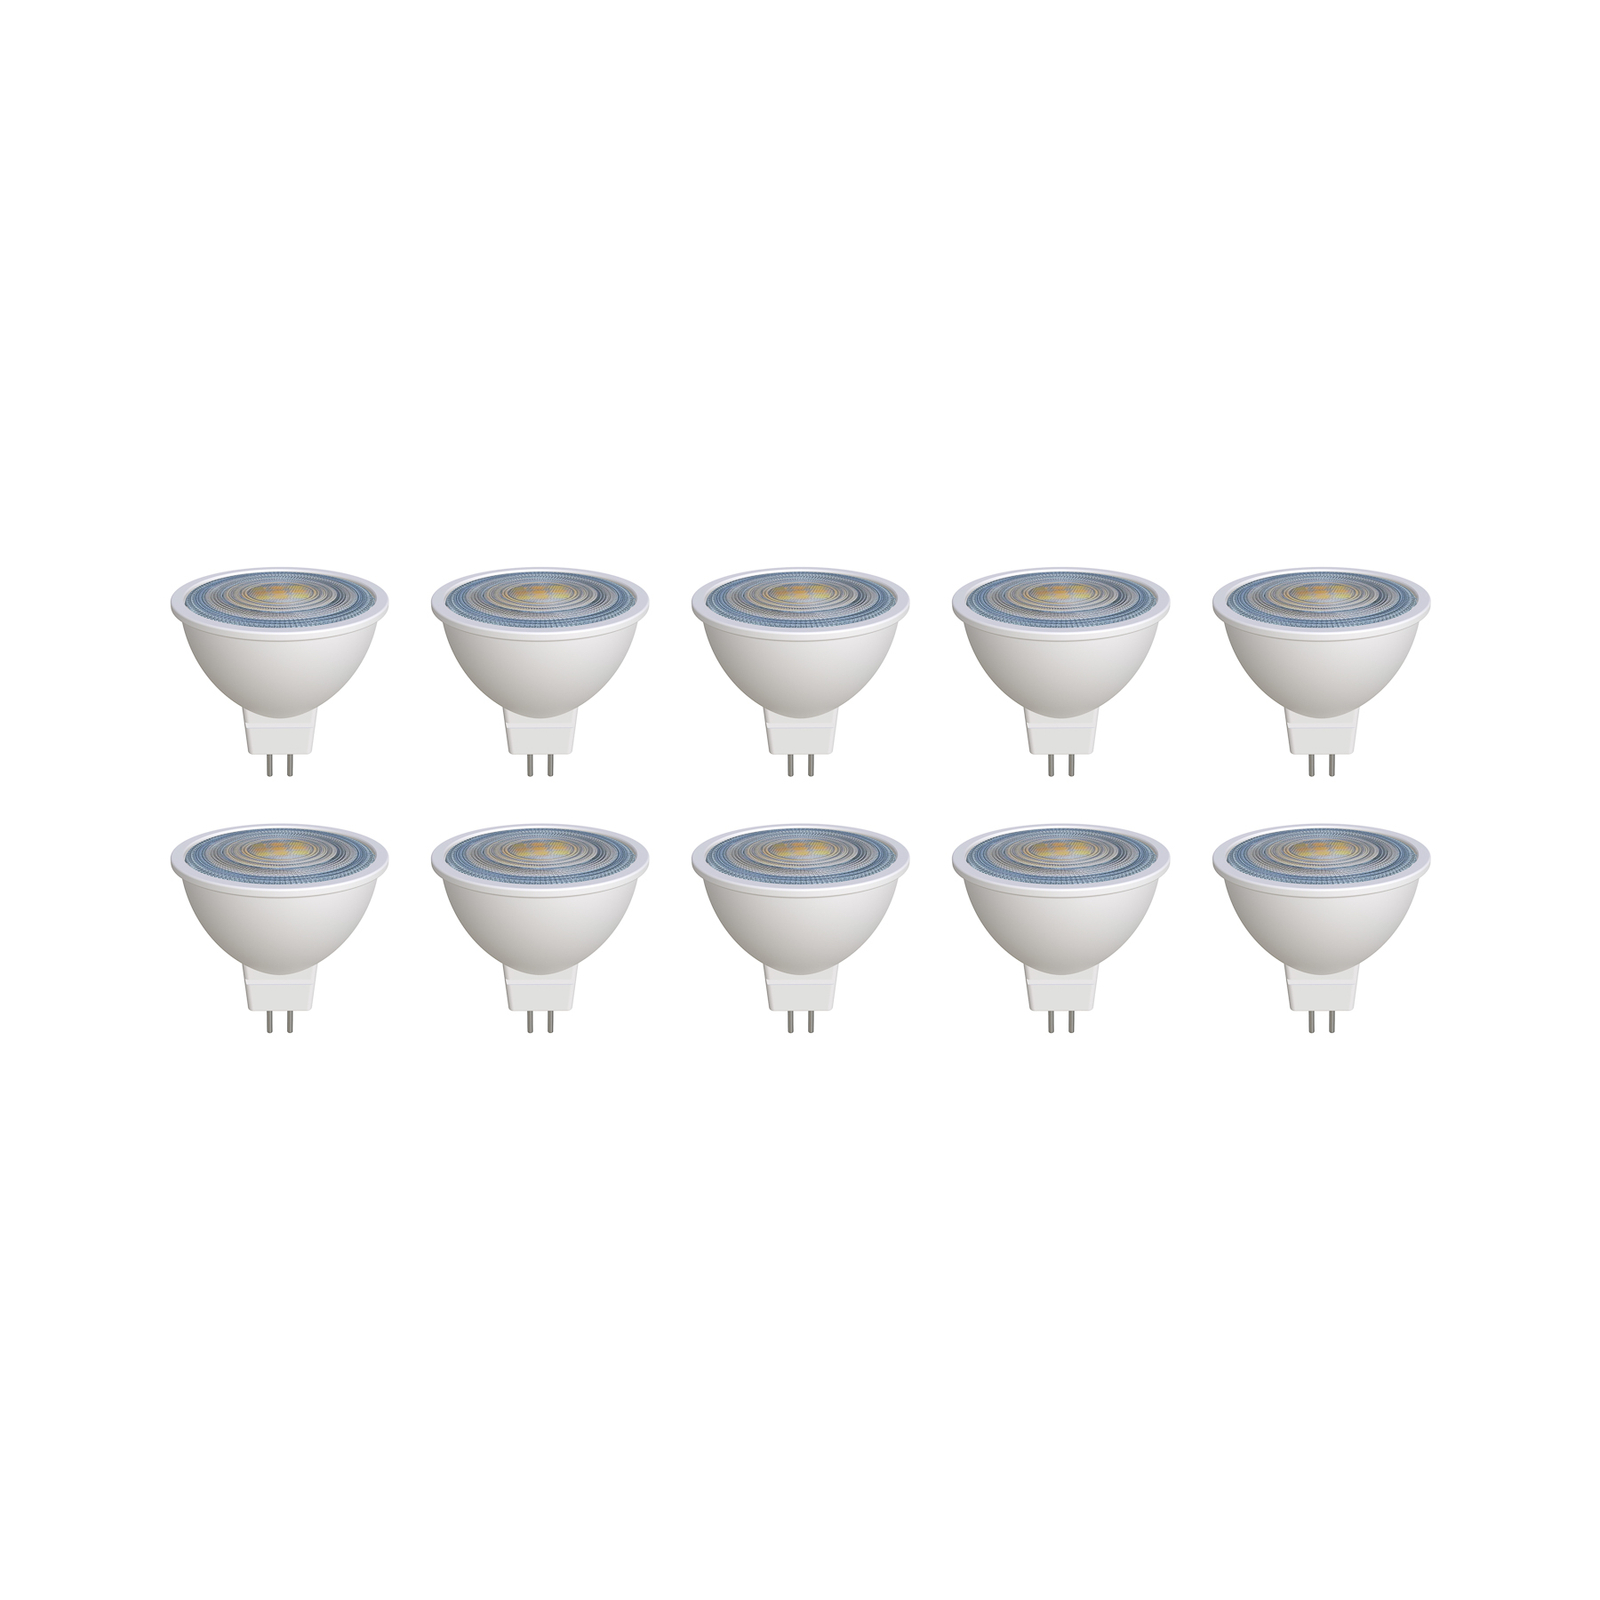 Prios LED reflectorlamp GU5.3 7.5W 621lm 36° wit 827 set van 10